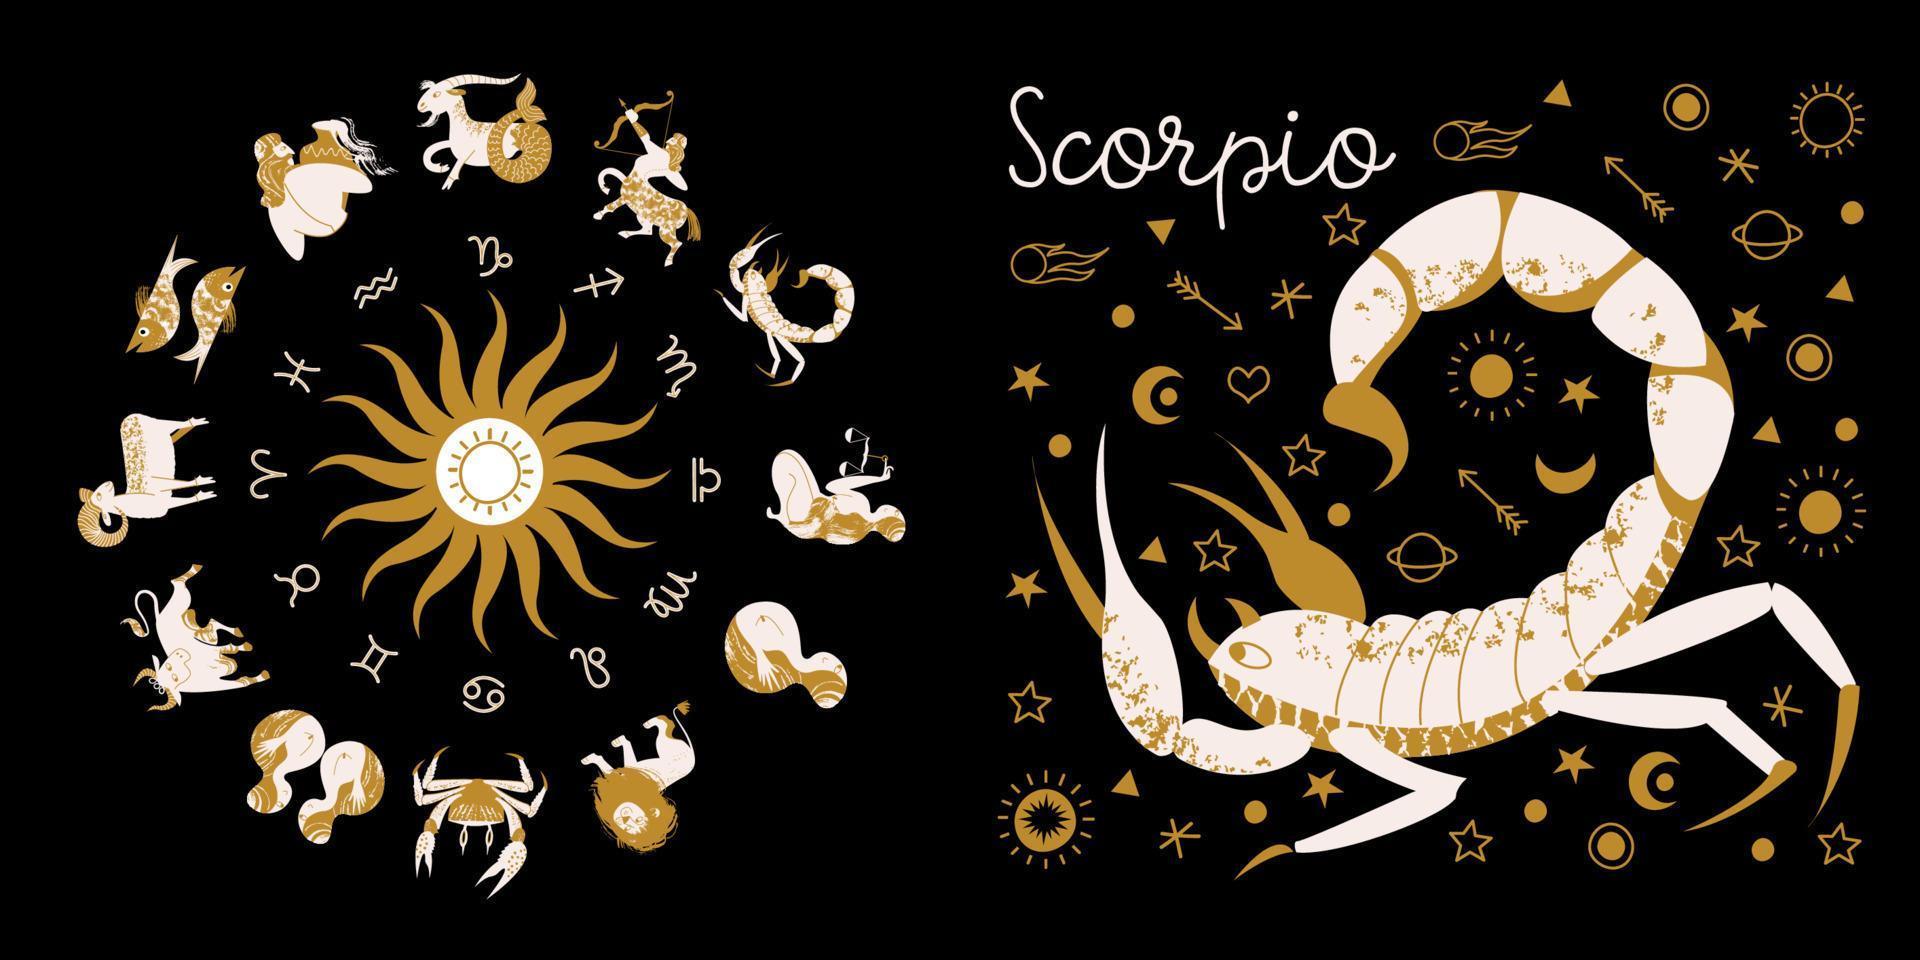 signo de Escorpião do zodíaco. horóscopo e astrologia. horóscopo completo no círculo. zodíaco de roda de horóscopo com vetor de doze signos.